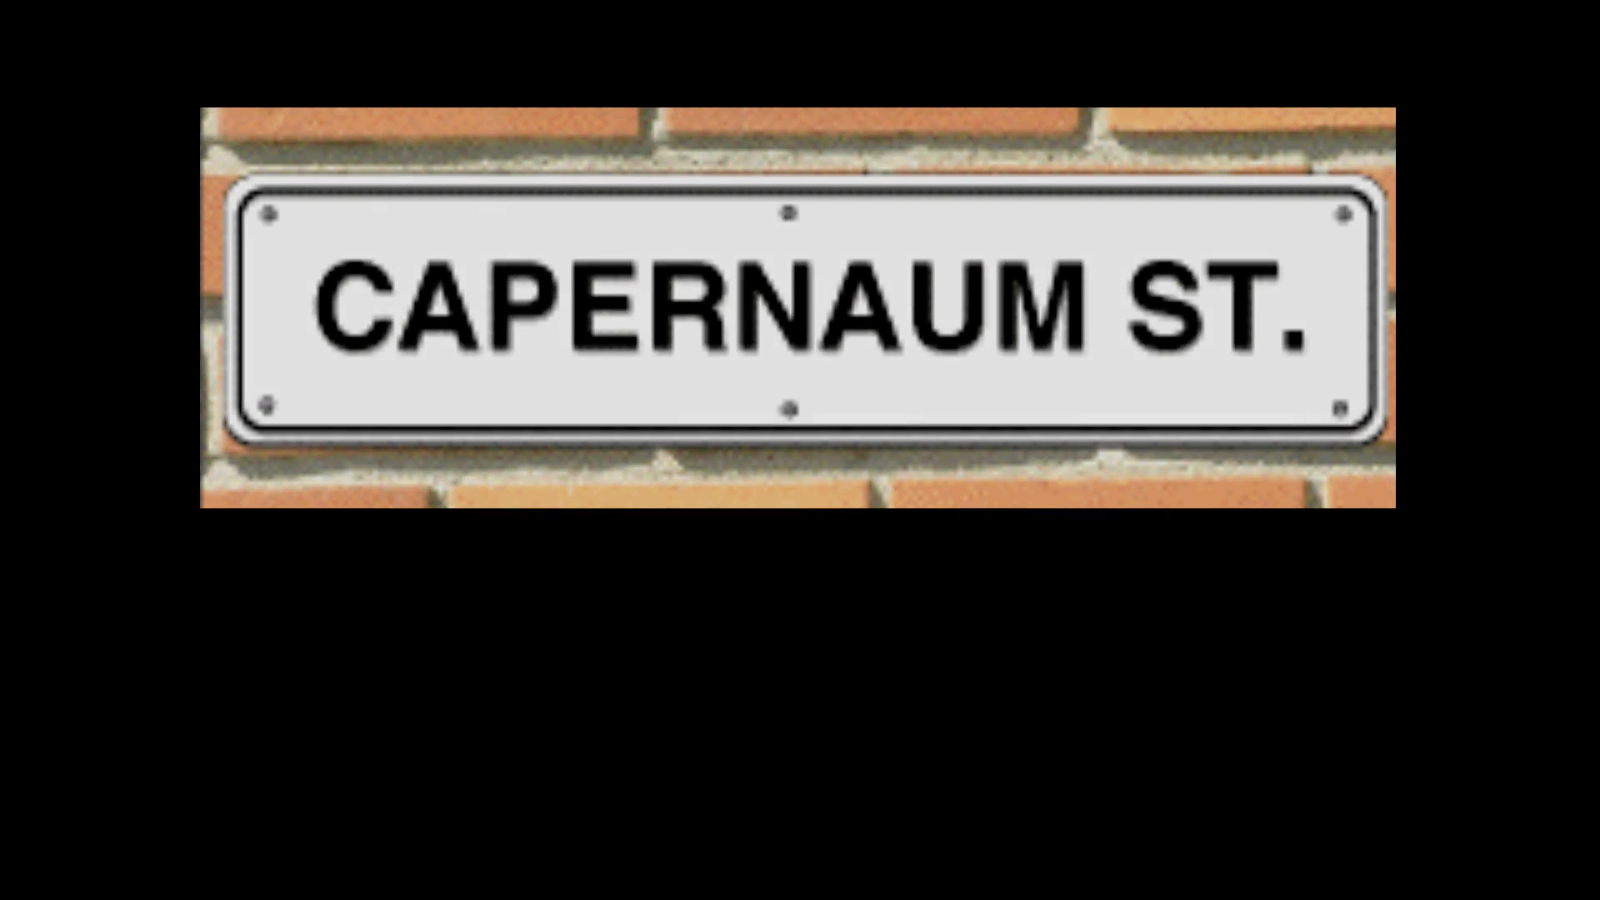 Capernaum Street 2: The Reinstatement